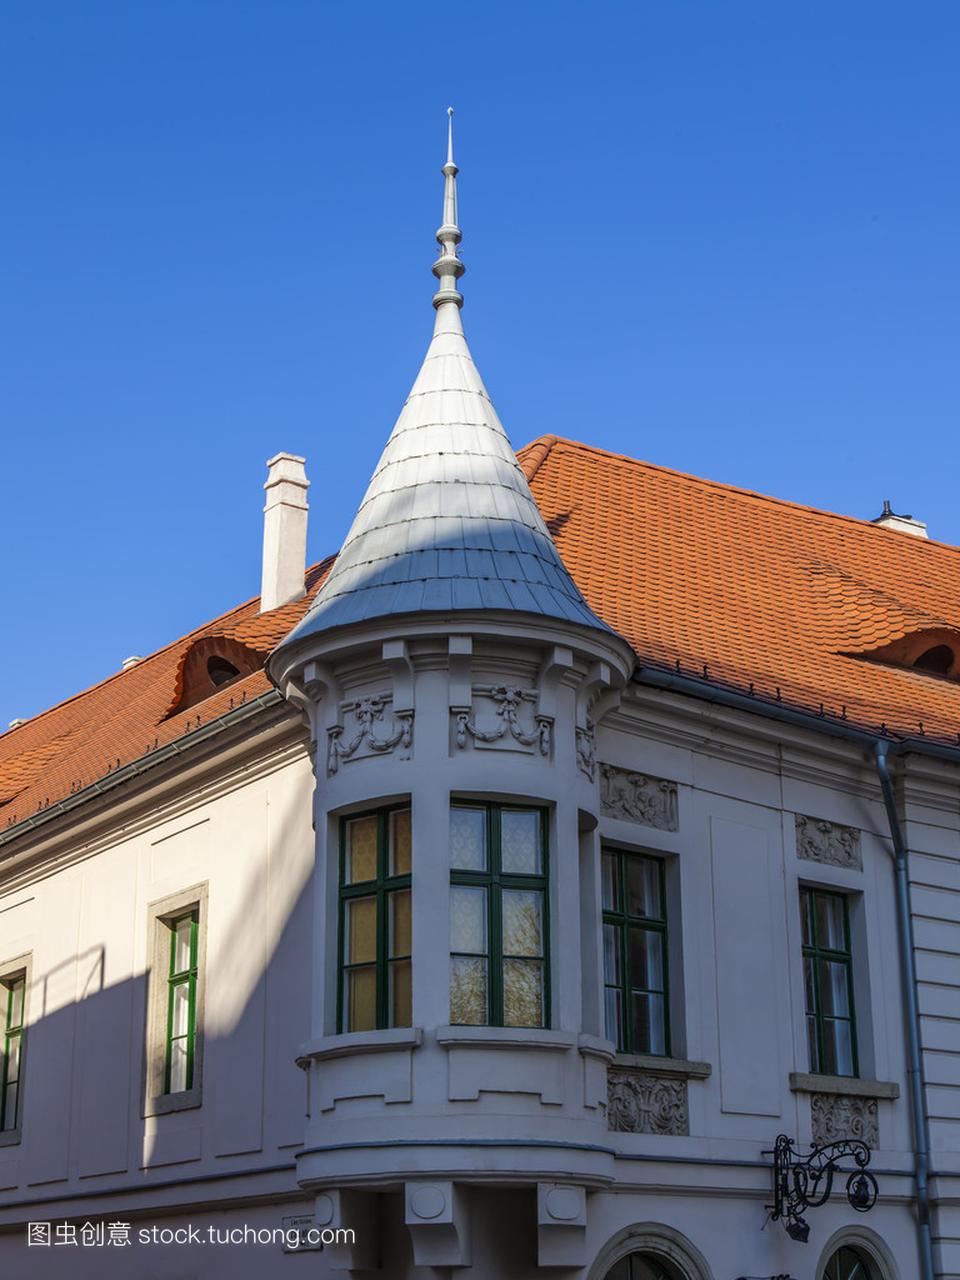 在匈牙利首都布达佩斯。典型的房子在这座历史